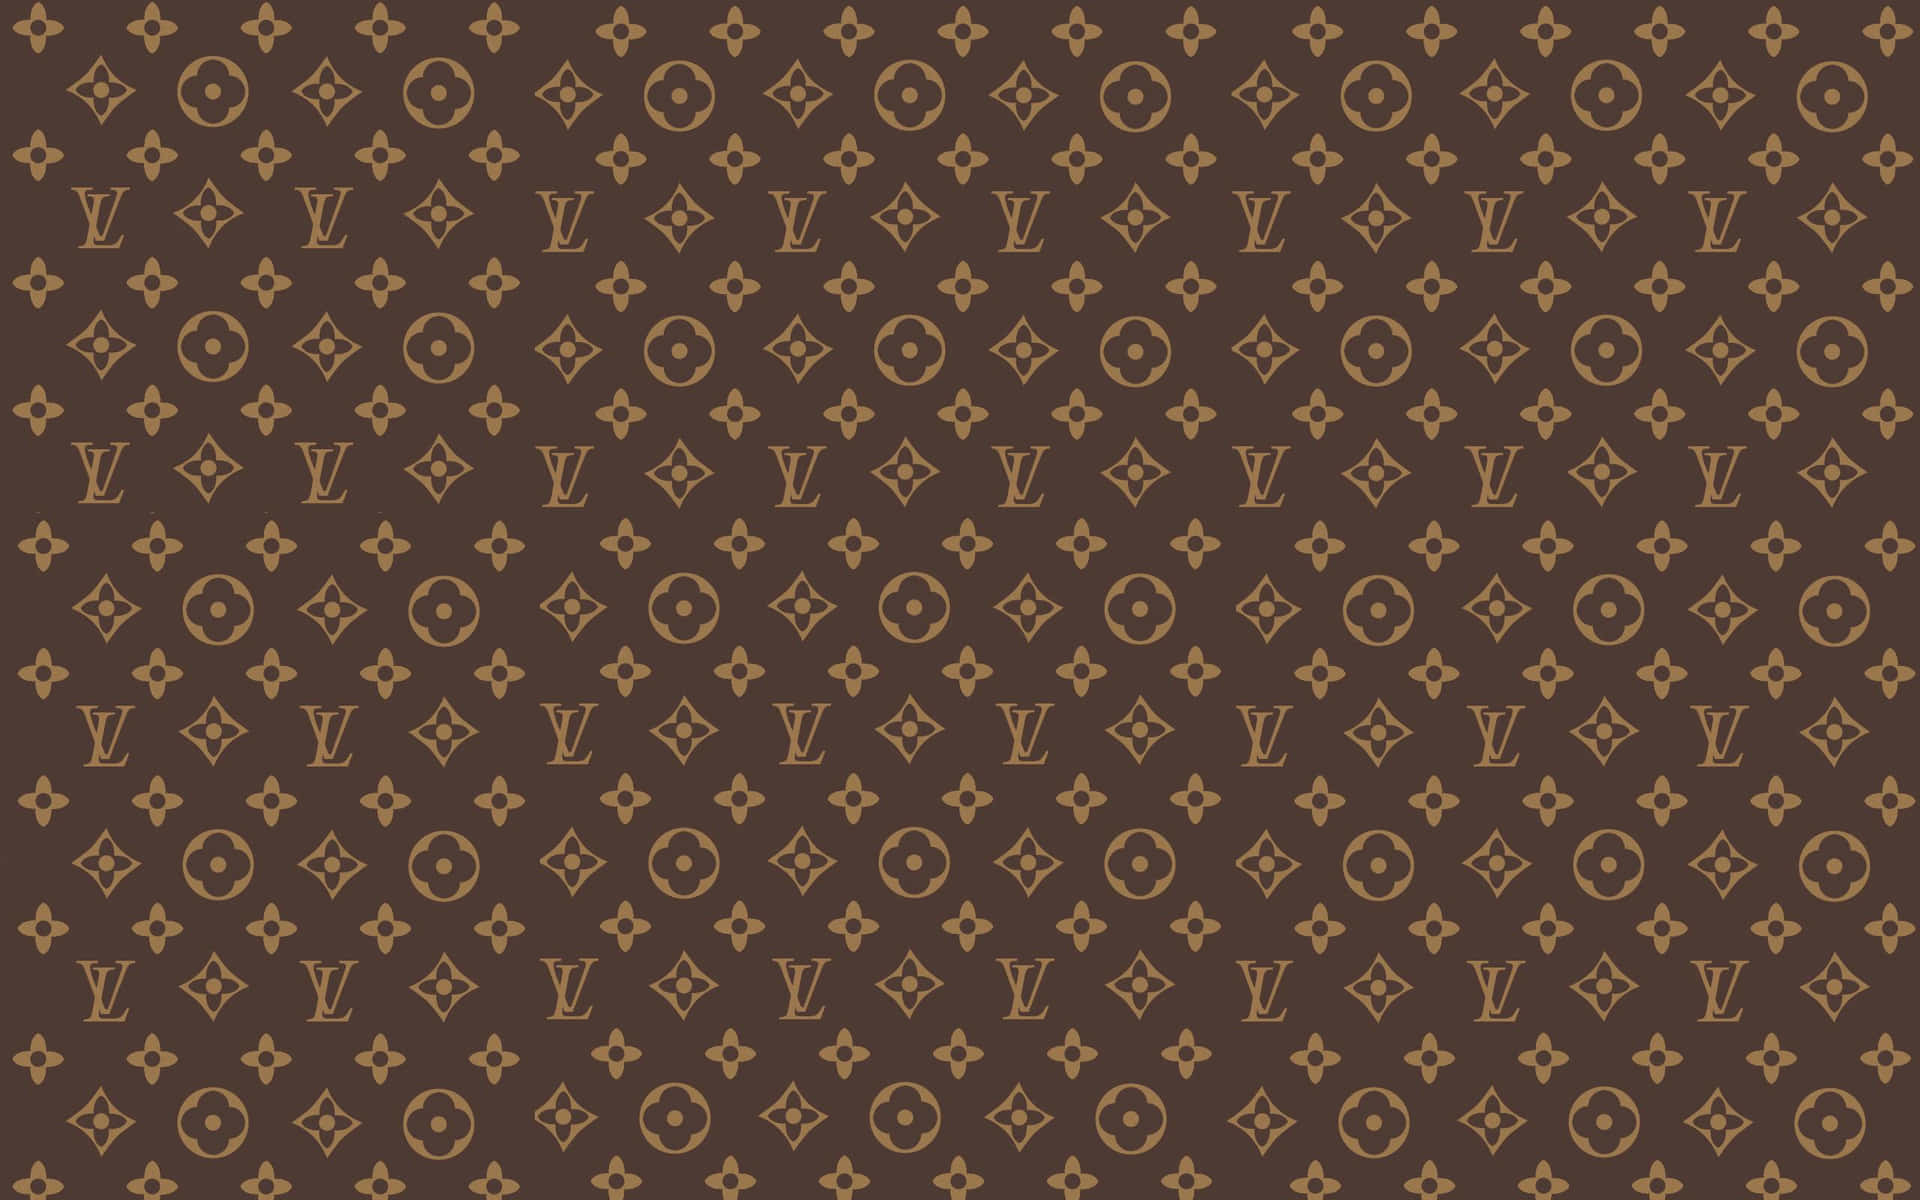 Få Det Bästa Av Mode Genom Att Bära En Cool Louis Vuitton Dator- Eller Mobilbakgrundsbild. Wallpaper